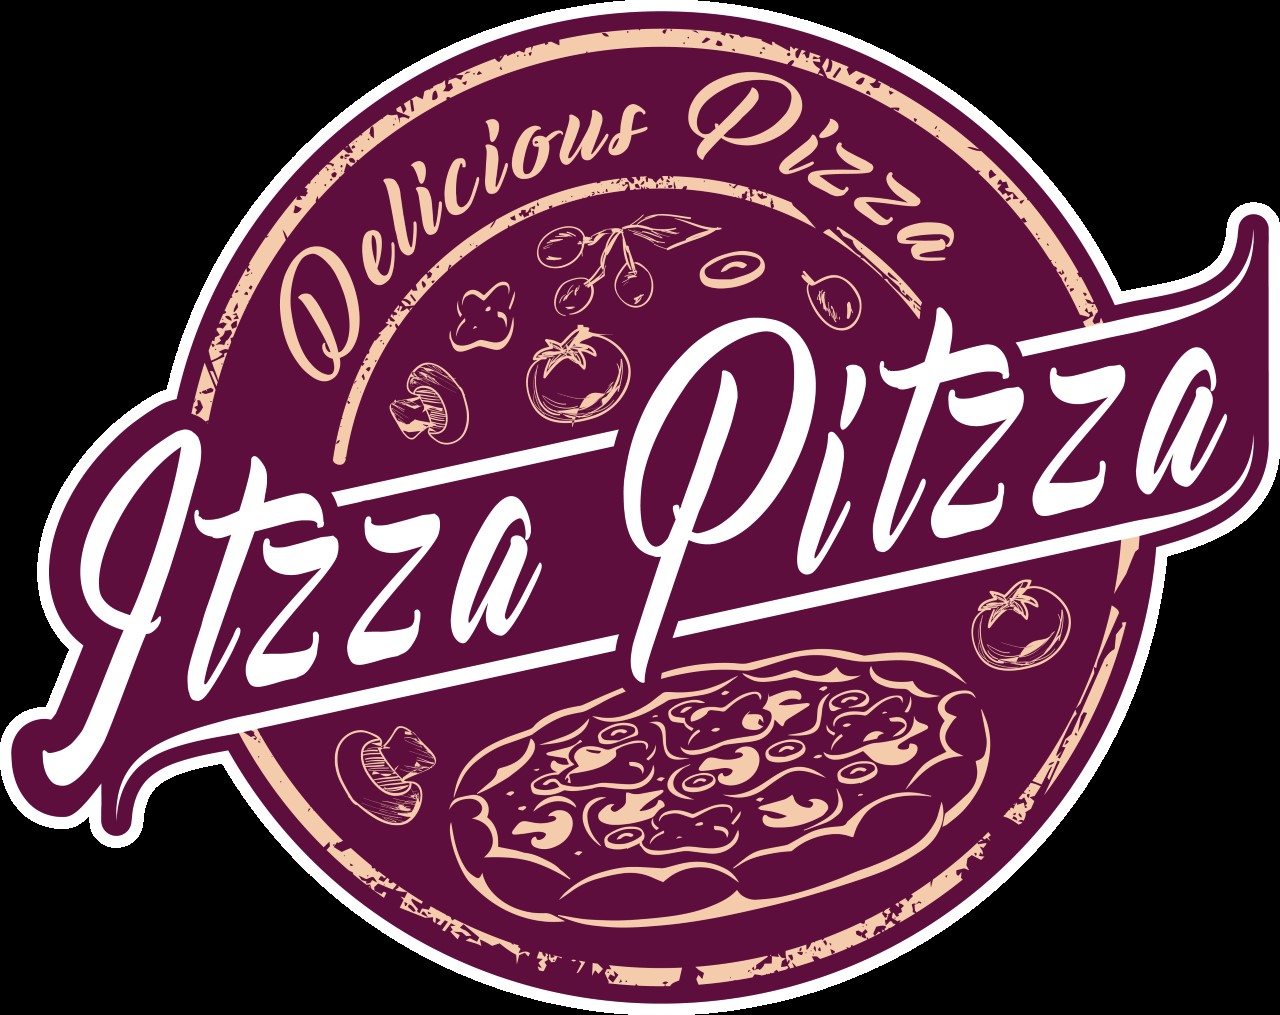 itzza pitzza